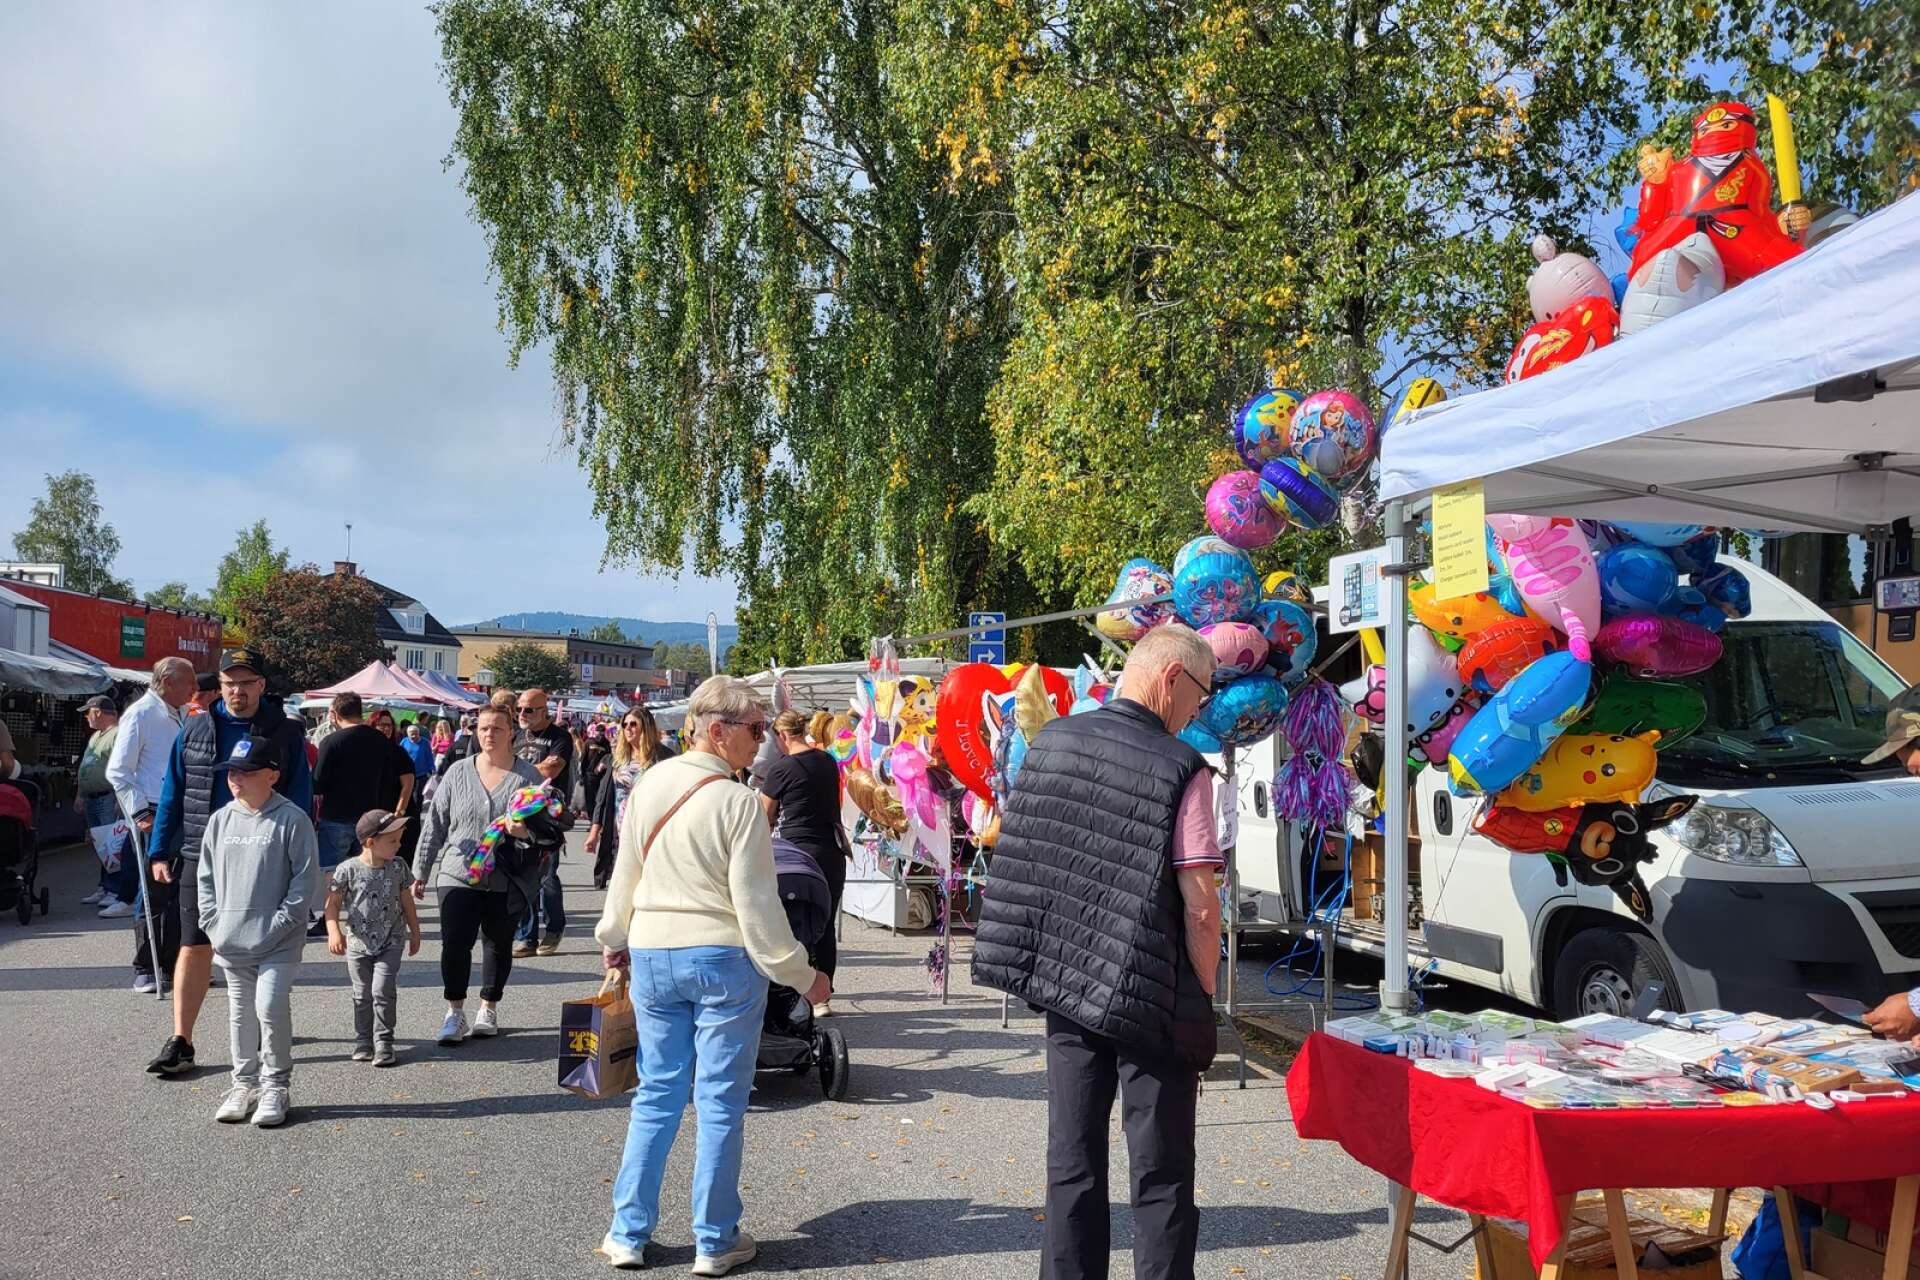 Årets största händelse i Hällefors ägde rum mellan den 9-10 september. Den uppskattade Hälleforsmarken drog mycket folk och det var fler knallar än i fjol. 